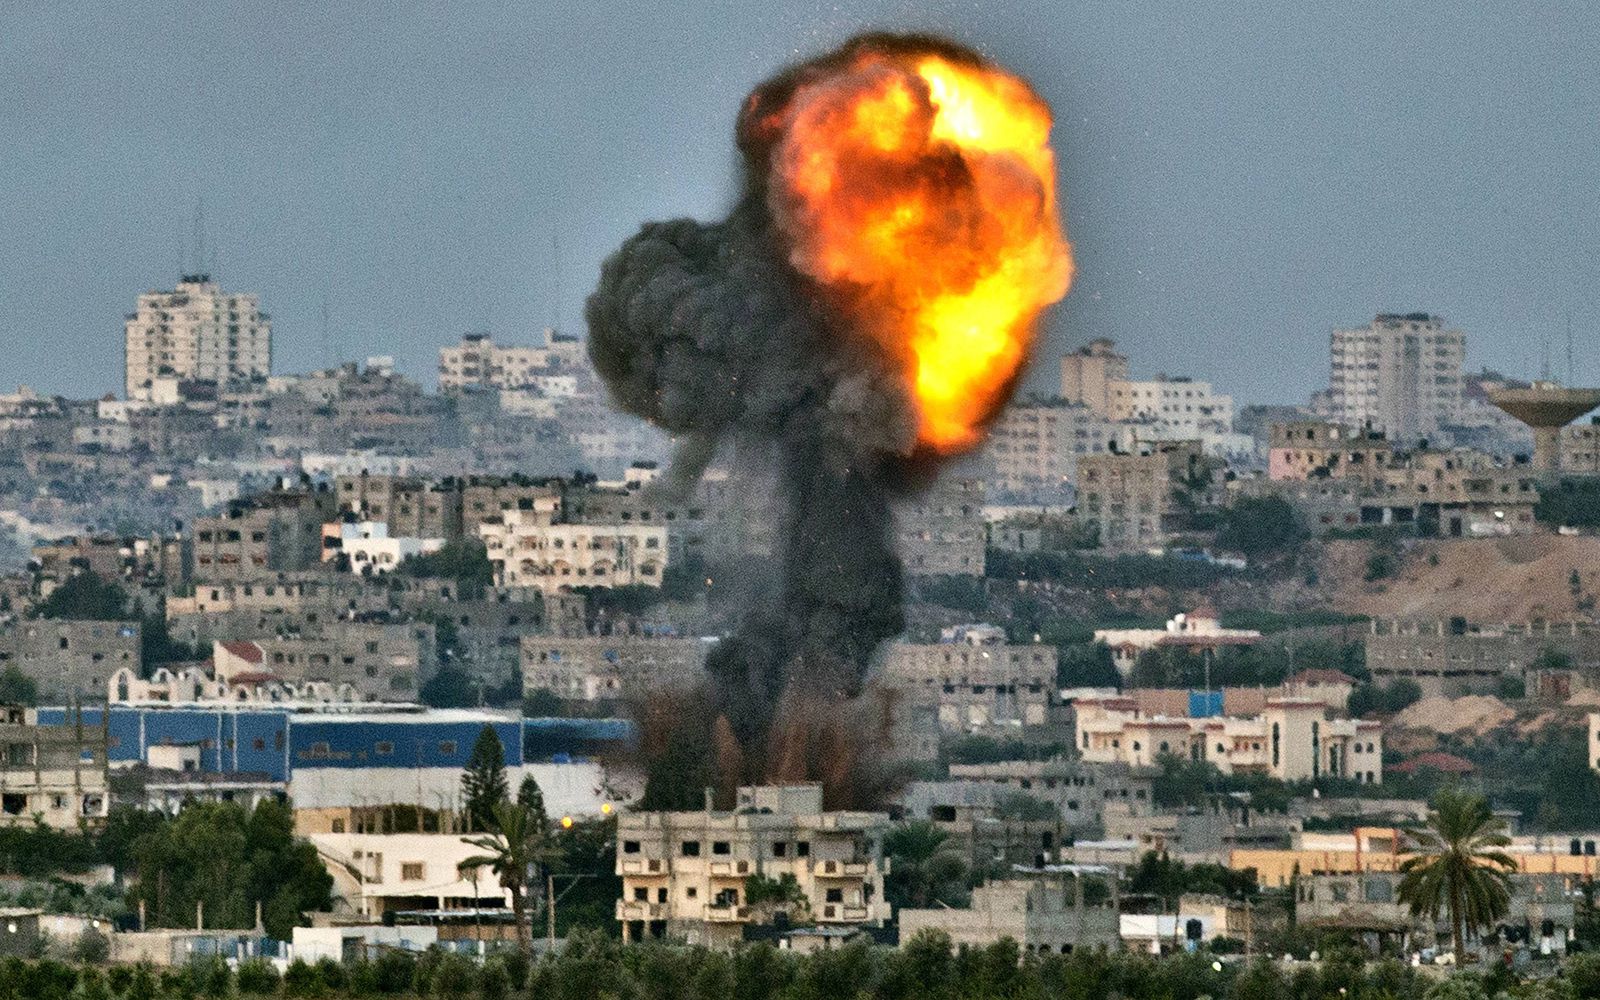 D'après The Guardian, le plan israélien pour détruire le Hamas a pour objectif de s'accaparer les réserves de gaz de Gaza